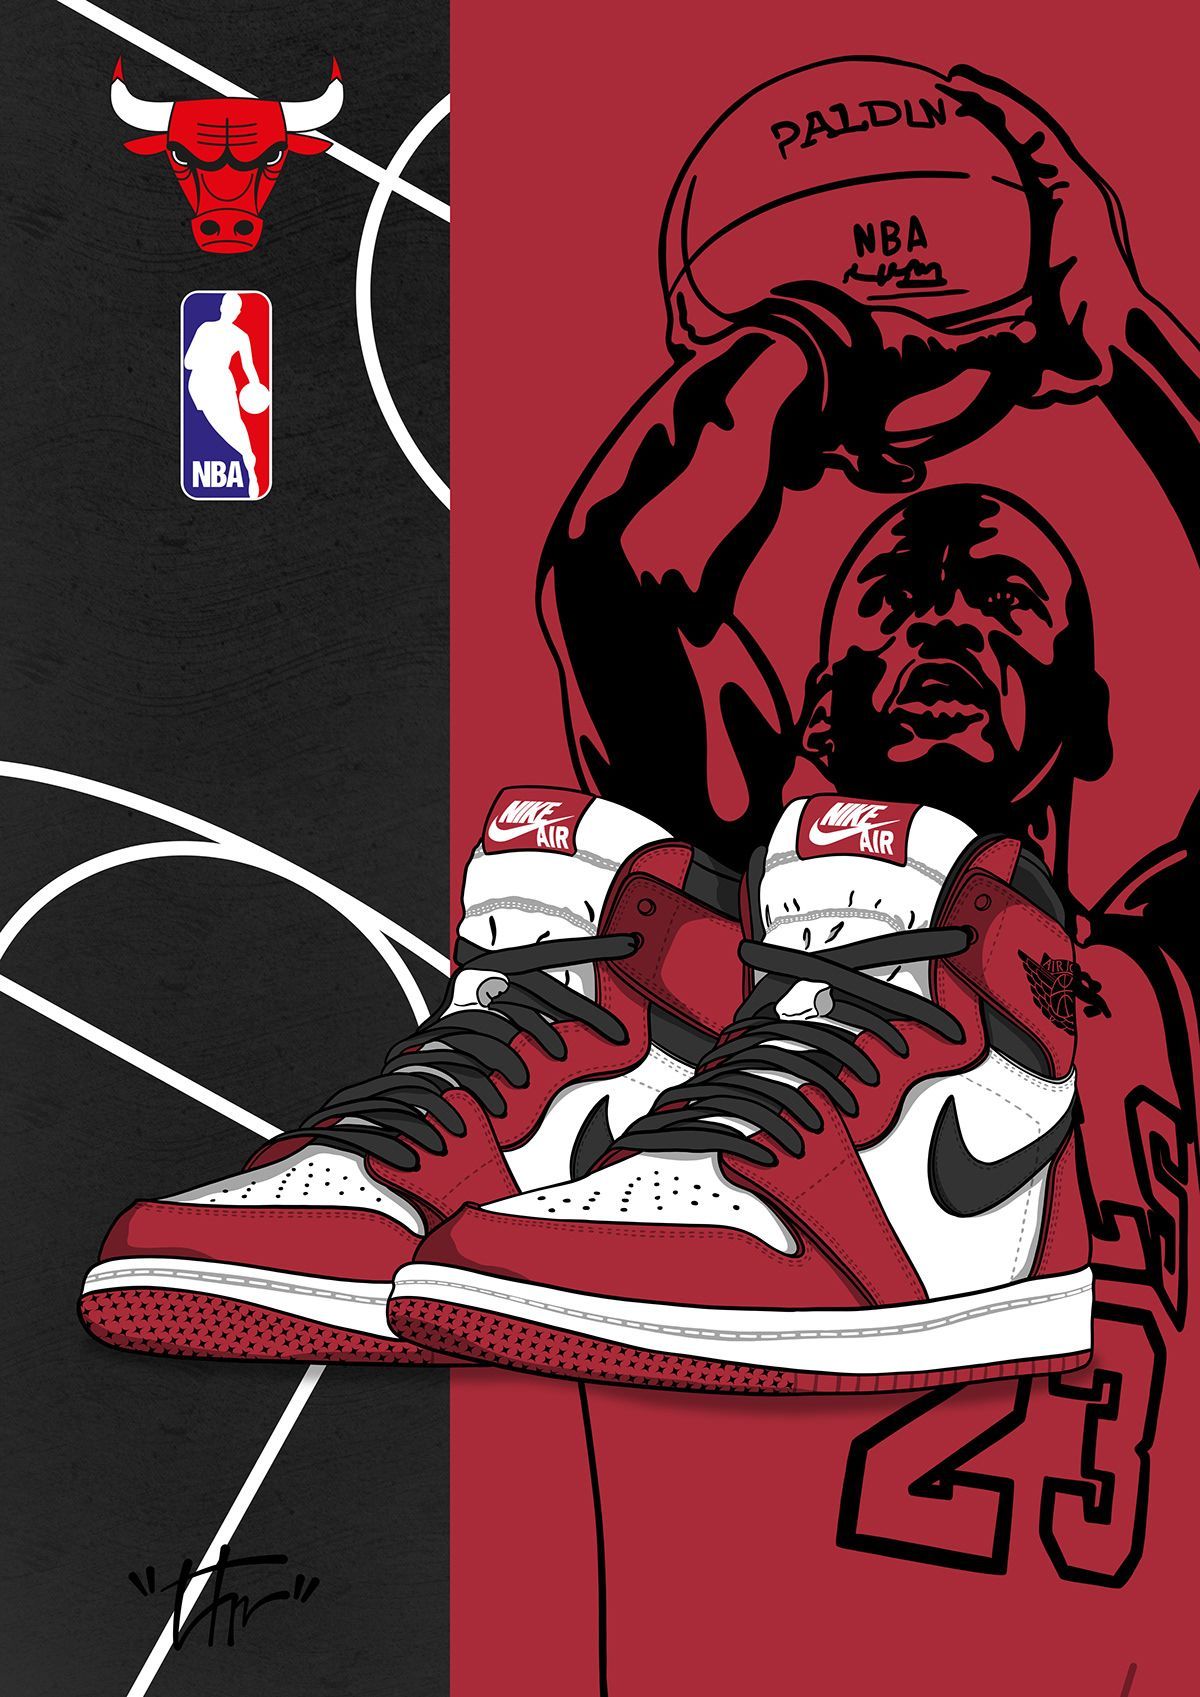 Air Jordan 1 Retro Chicago. Nike art, Sneakers illustration, Jordan logo wallpaper